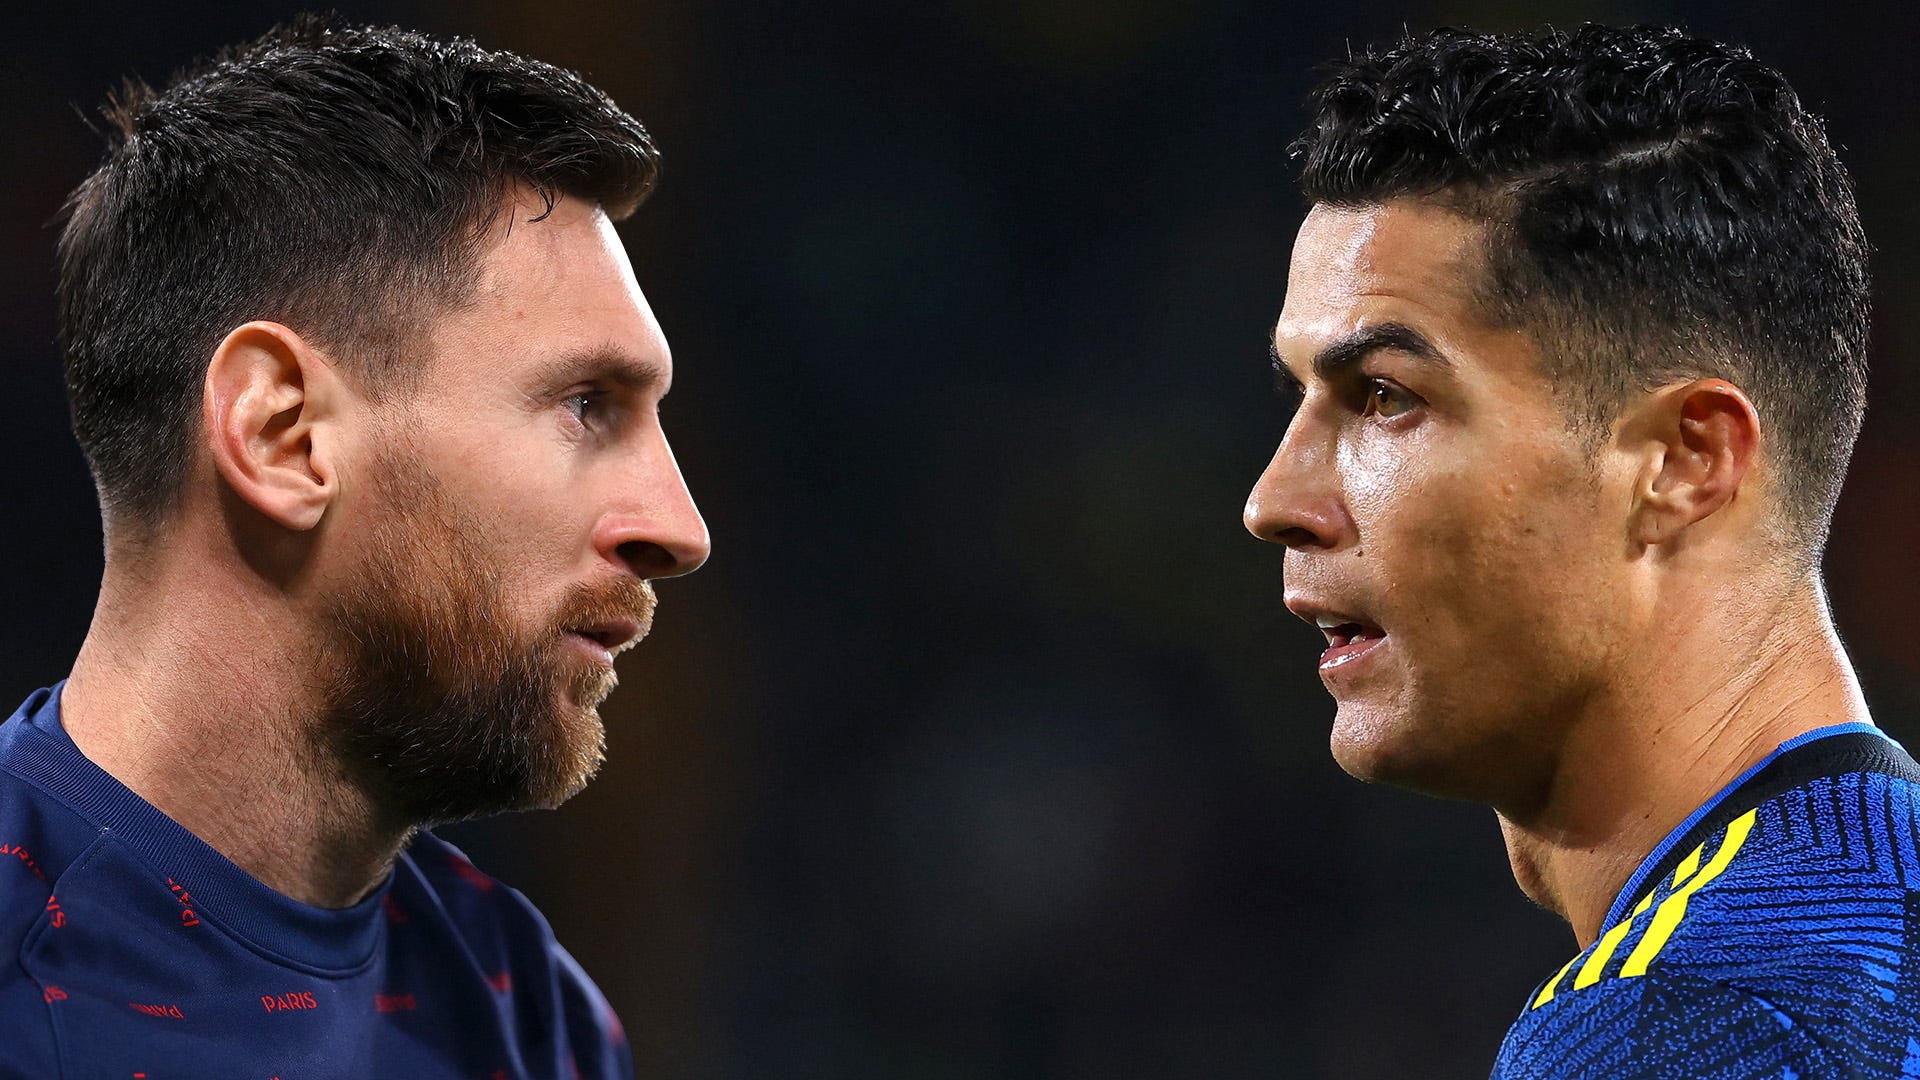 Cristiano Ronaldo vs Lionel Messi: FIFA stats history compared - who has been better? - Goal.com